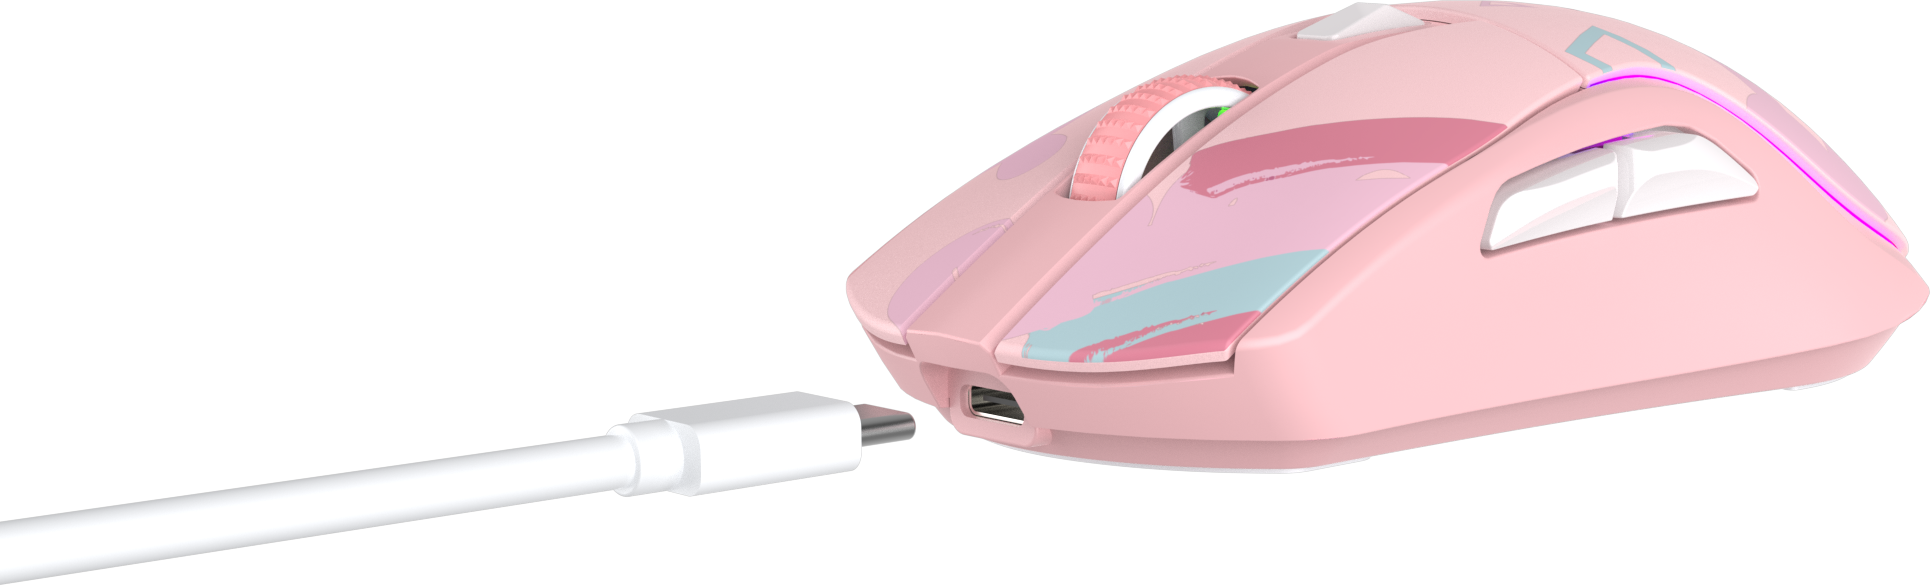 Мышь игровая беспроводная Dareu A950 Pink (розовый), DPI 400/800/1600/3200/6400/12000, подключение Tri-mode: проводное+2.4GHz+BT, встроенный аккумулятор 930mAh, зарядная станция, подсветка RGB, размер - фото №5